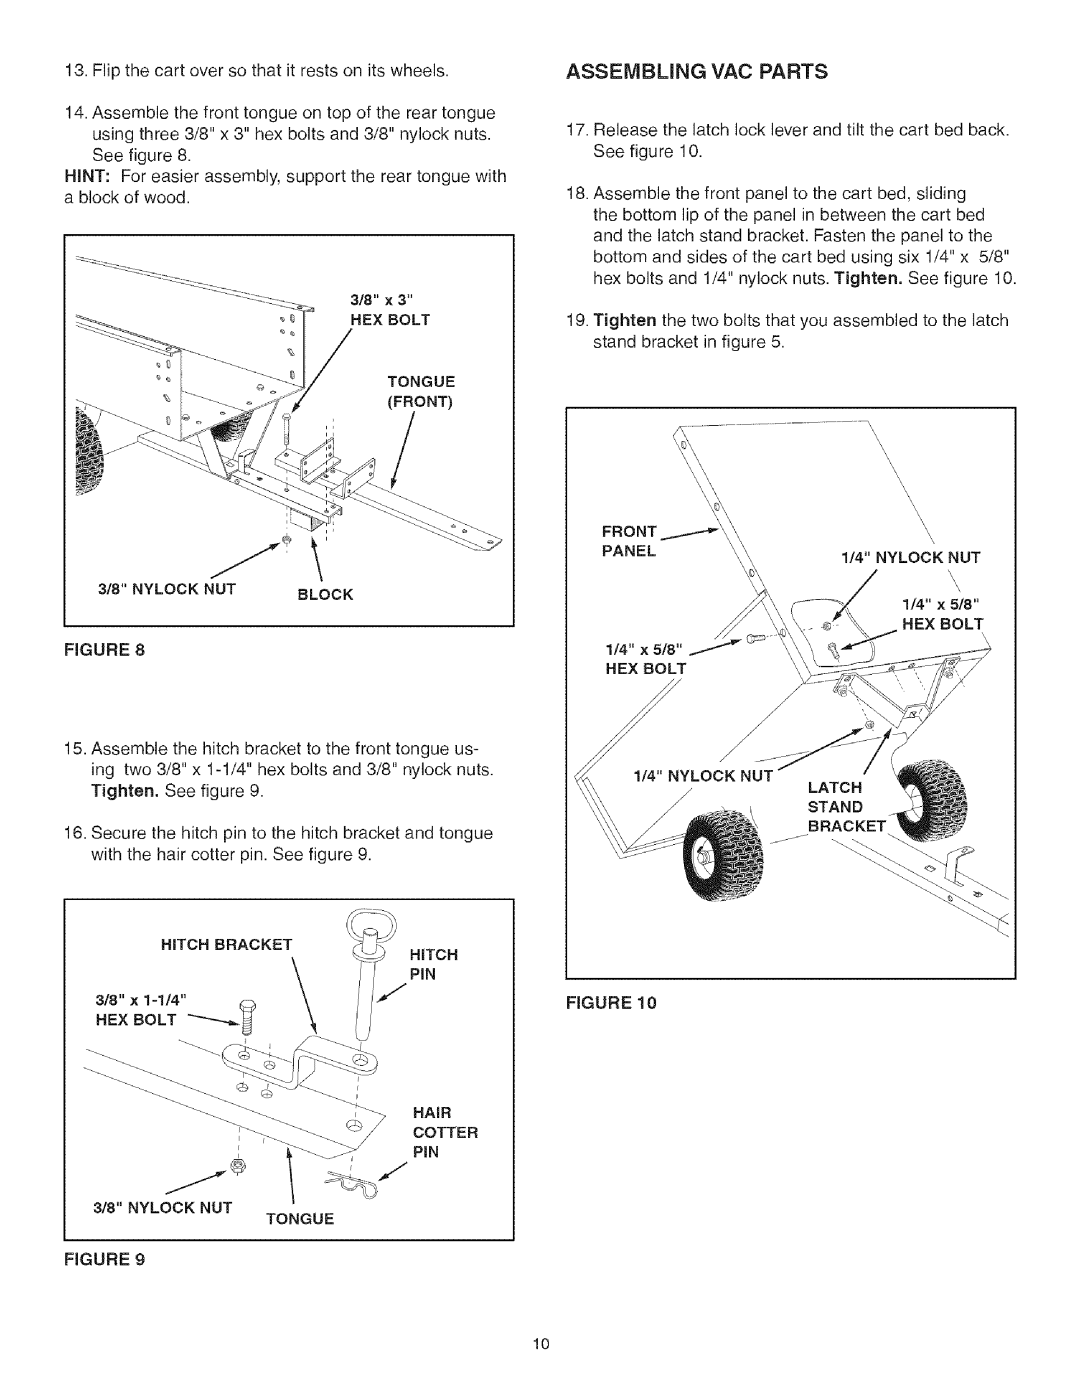 Craftsman 486.24517 manual Assembling Vac Parts 